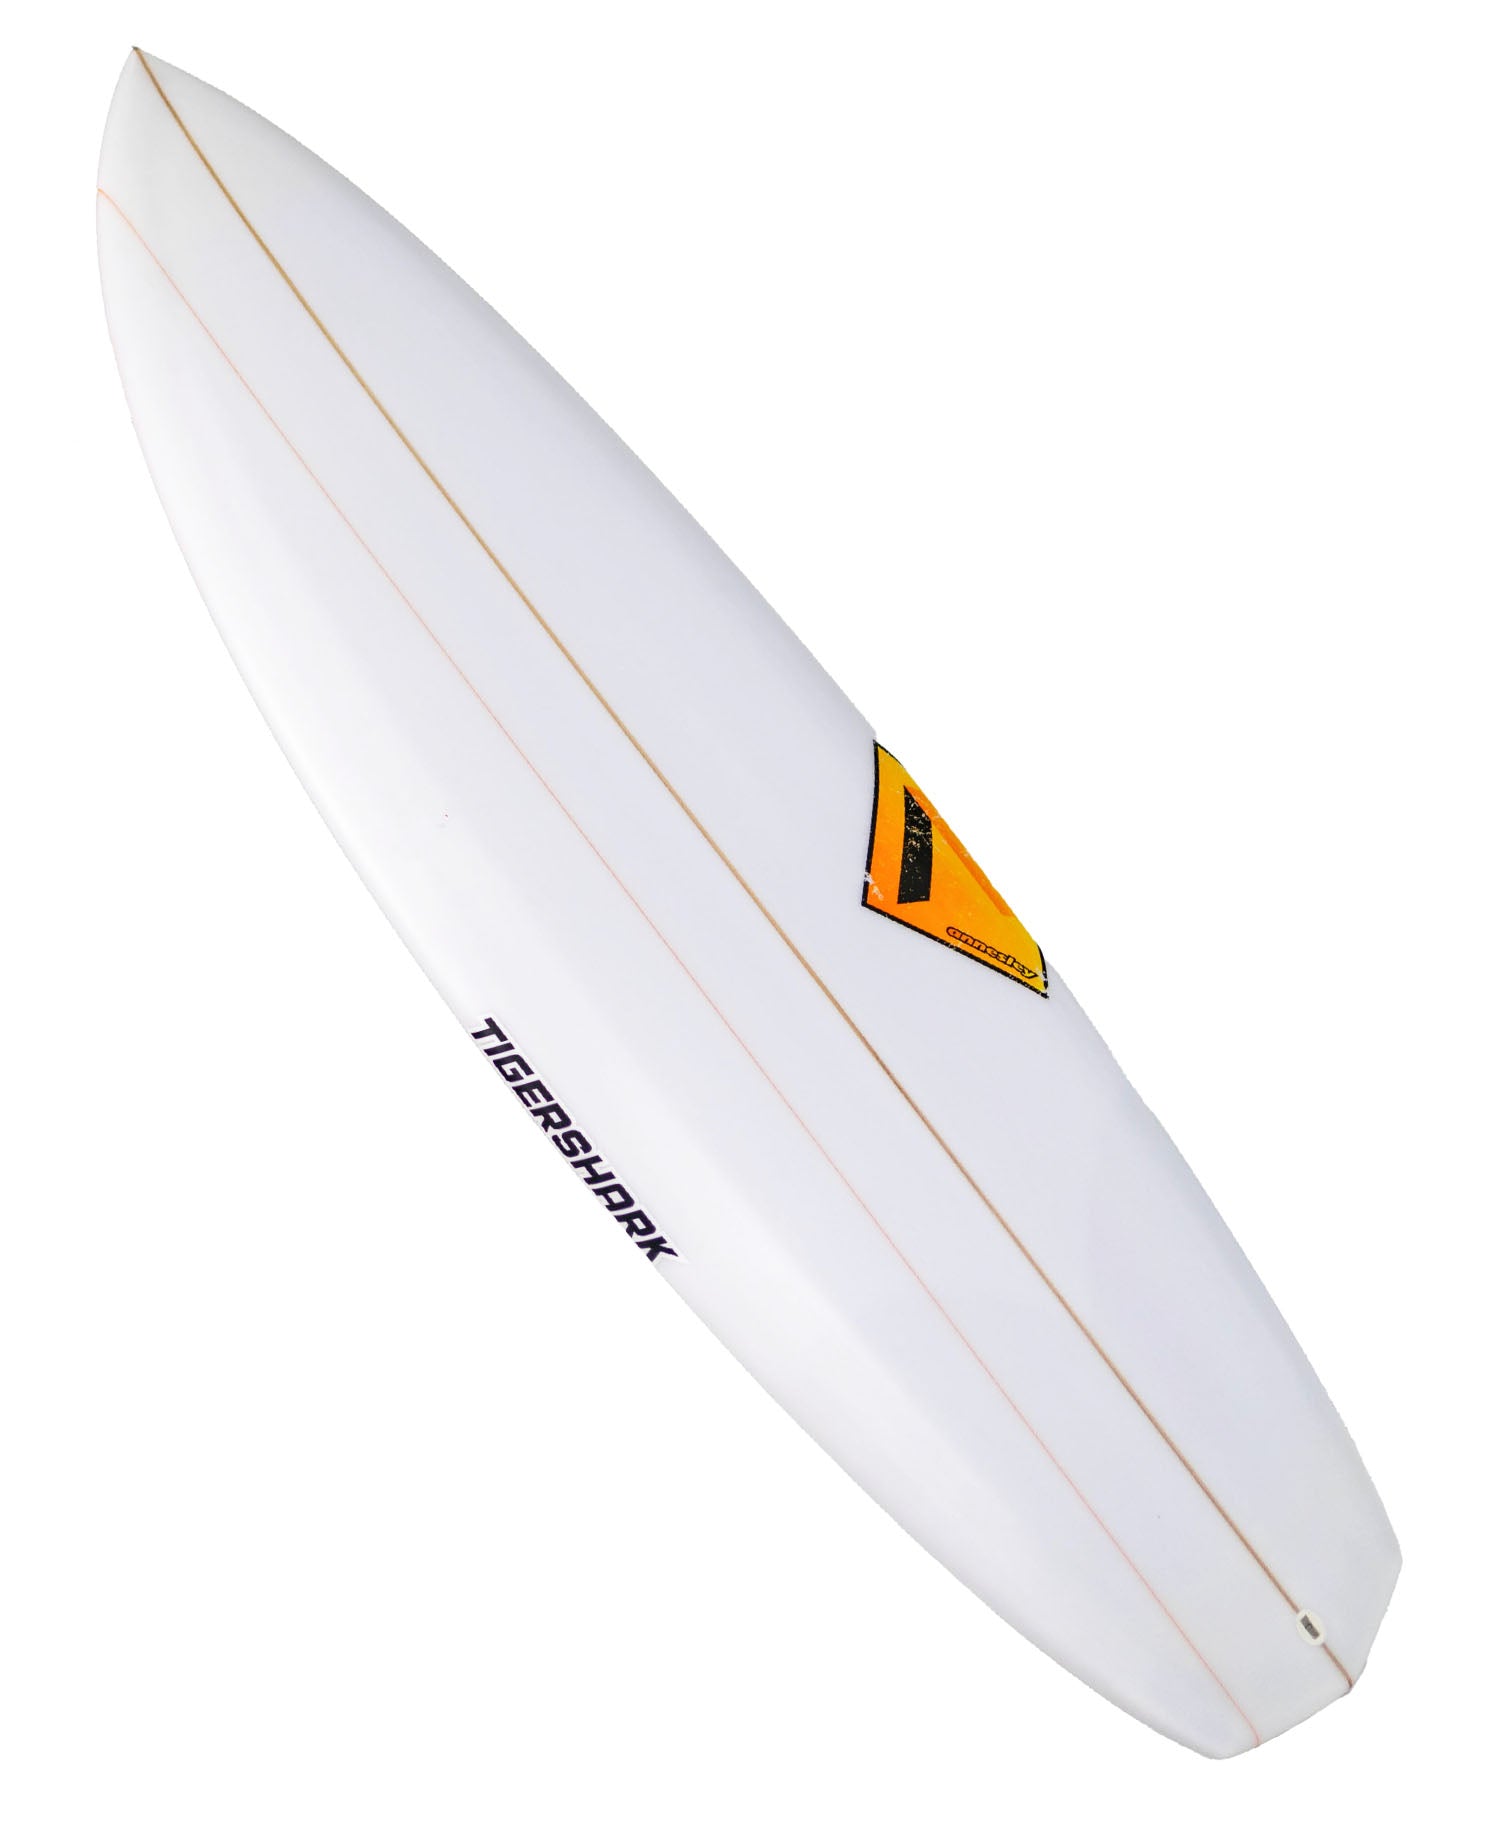 ANNESLEY 'TIGER SHARK' SURFBOARD